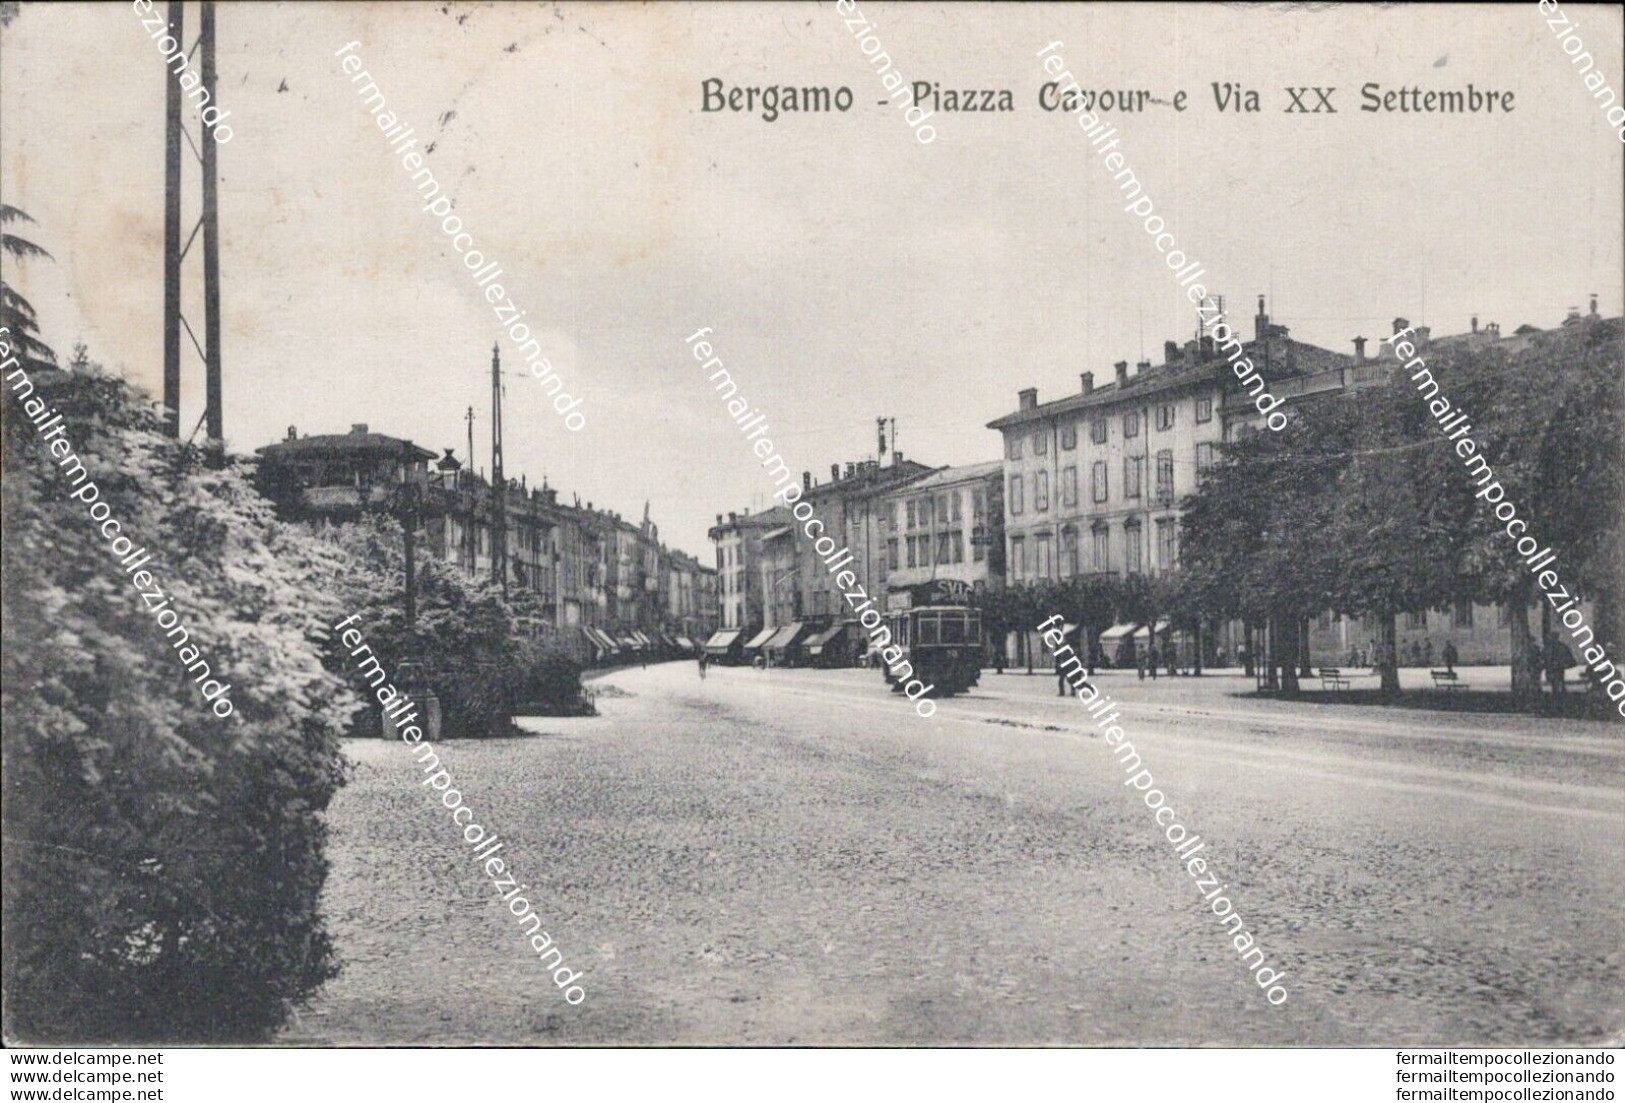 As485 Cartolina Bergamo Citta' Piazza Cavour E Via Xx Settembre Tram 1920 - Bergamo